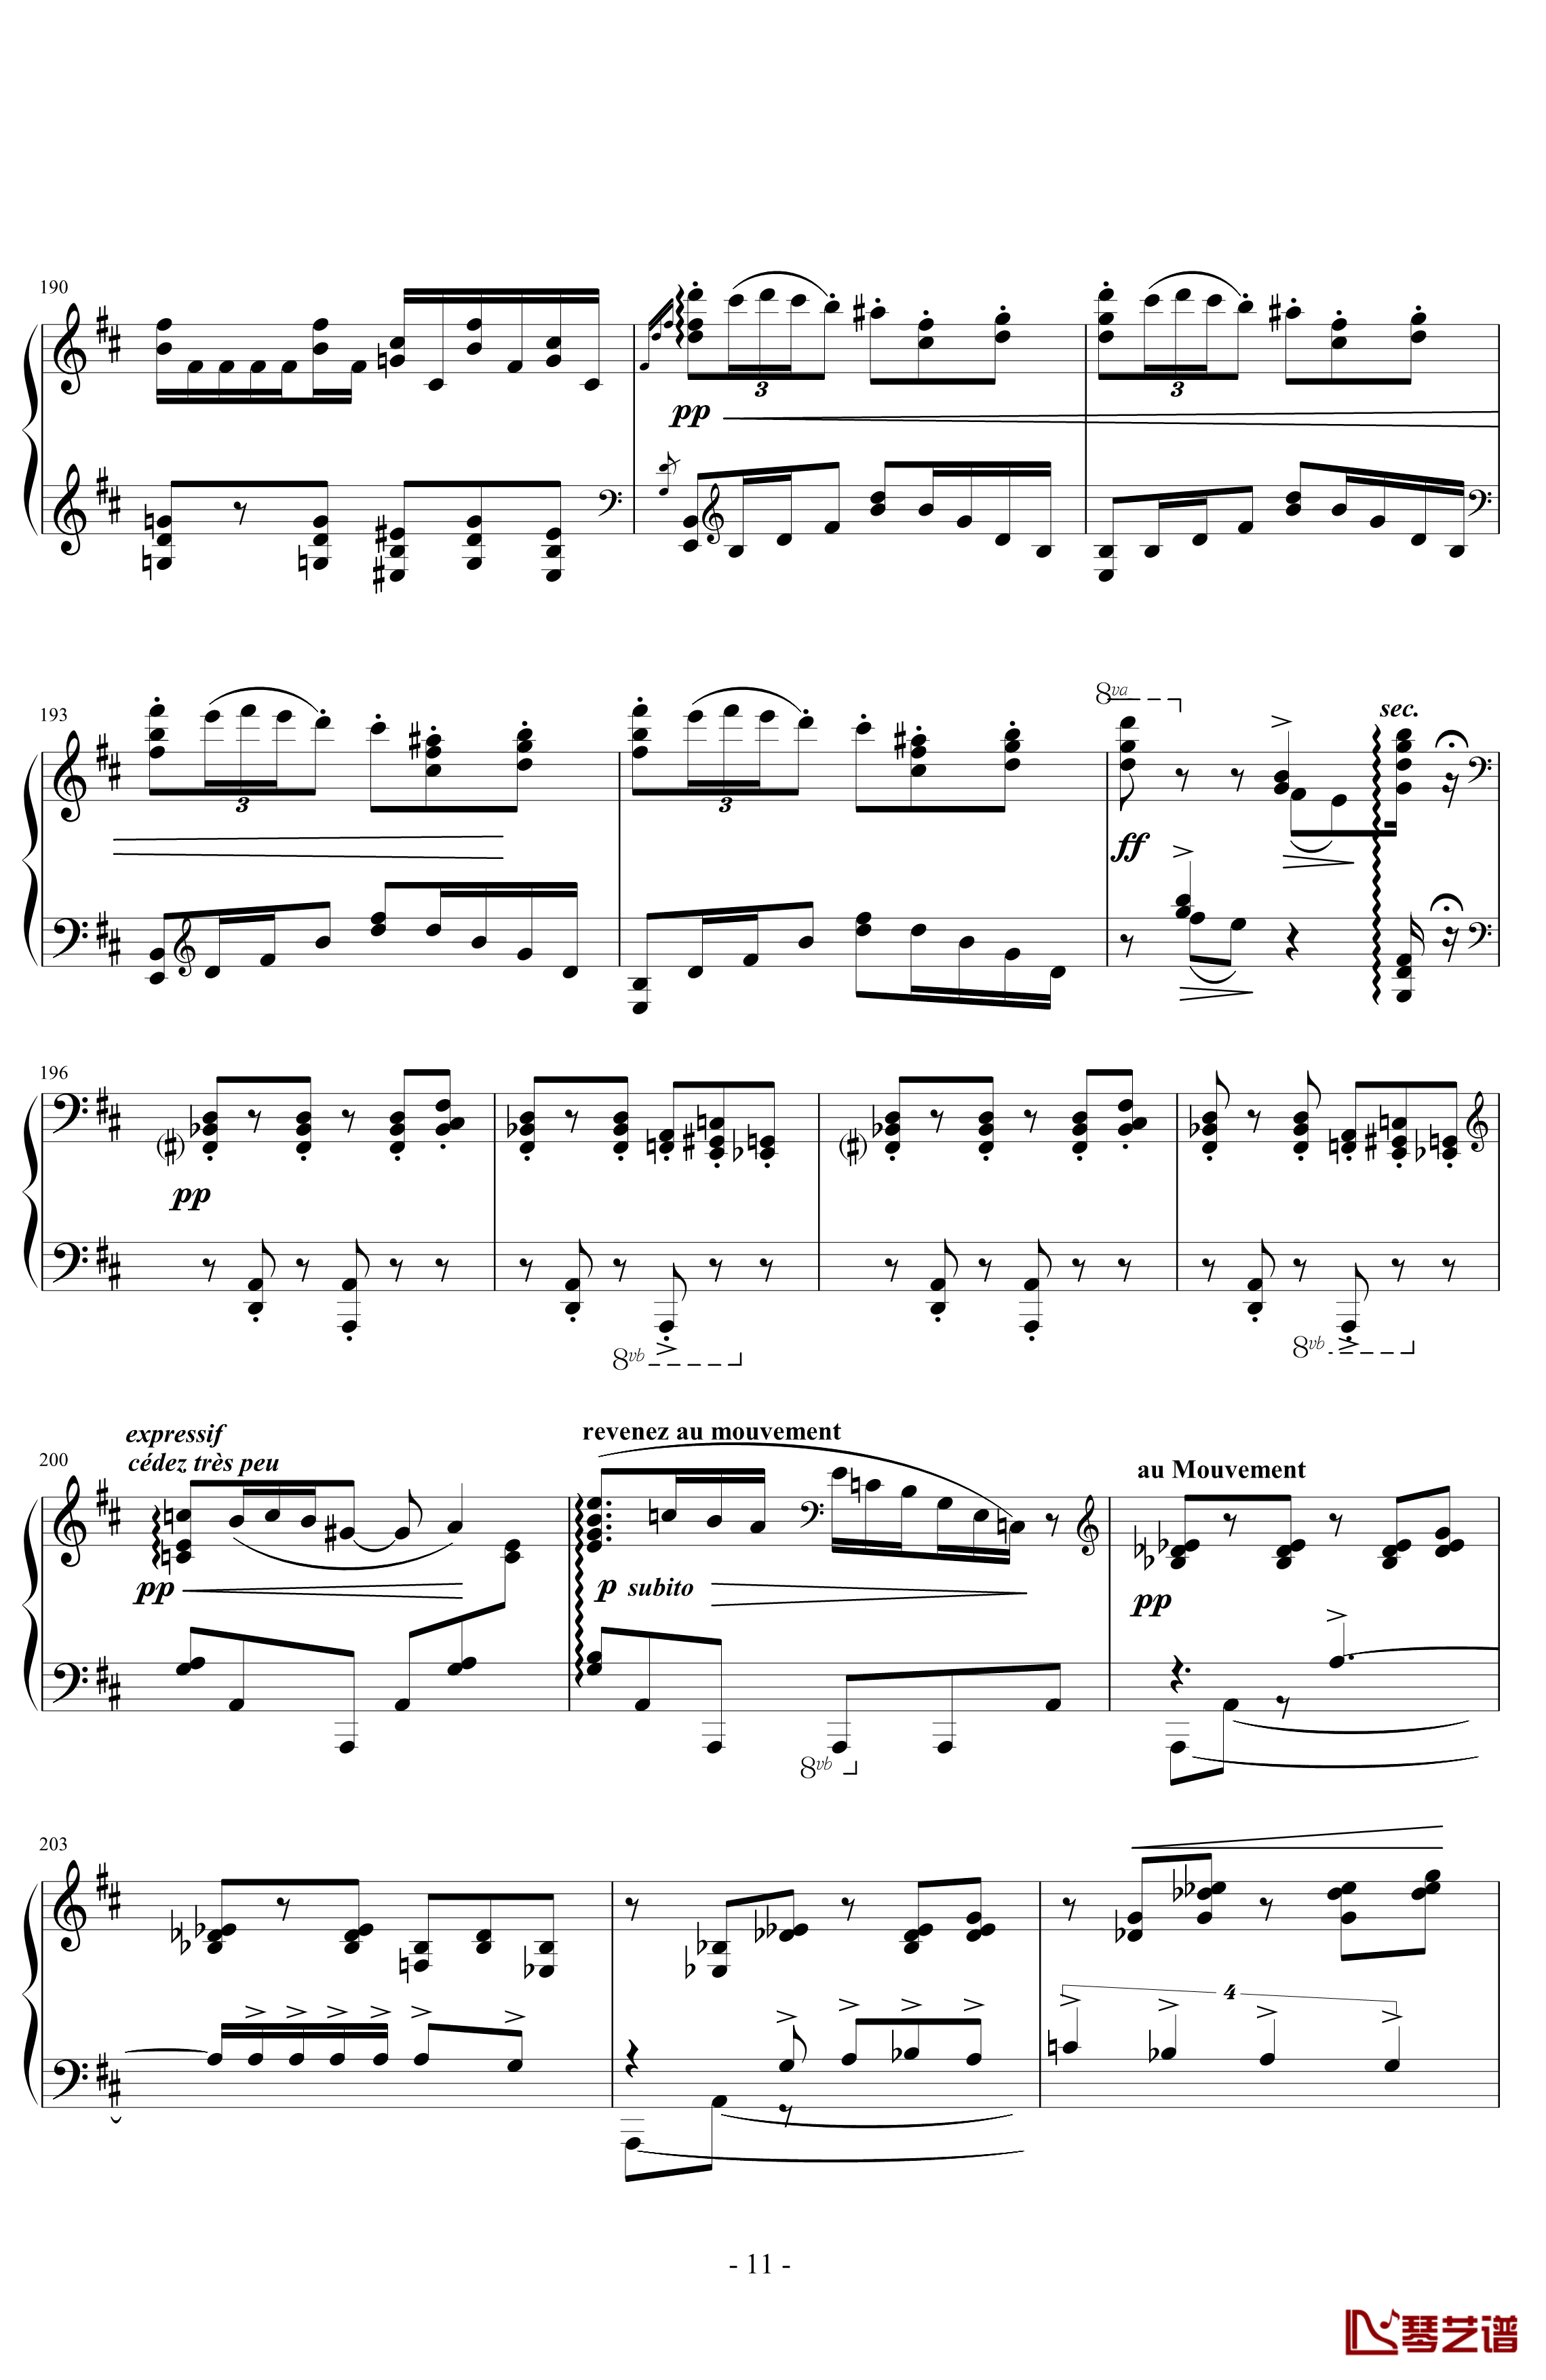 丑角的晨歌钢琴谱-组曲第4首-拉威尔-Ravel11